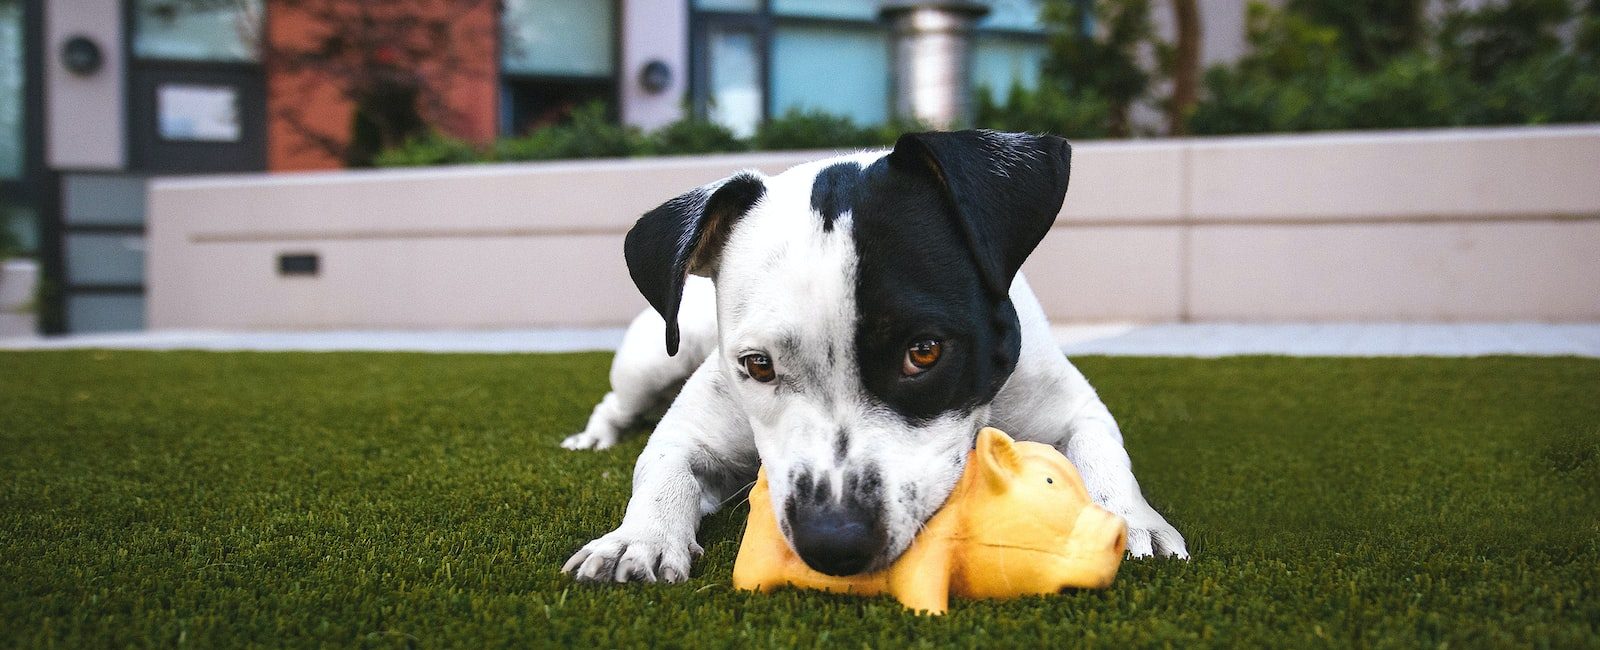 pitbull terrier américain blanc et noir mordant un jouet cochon jaune couché sur l'herbe en plein air pendant la journée